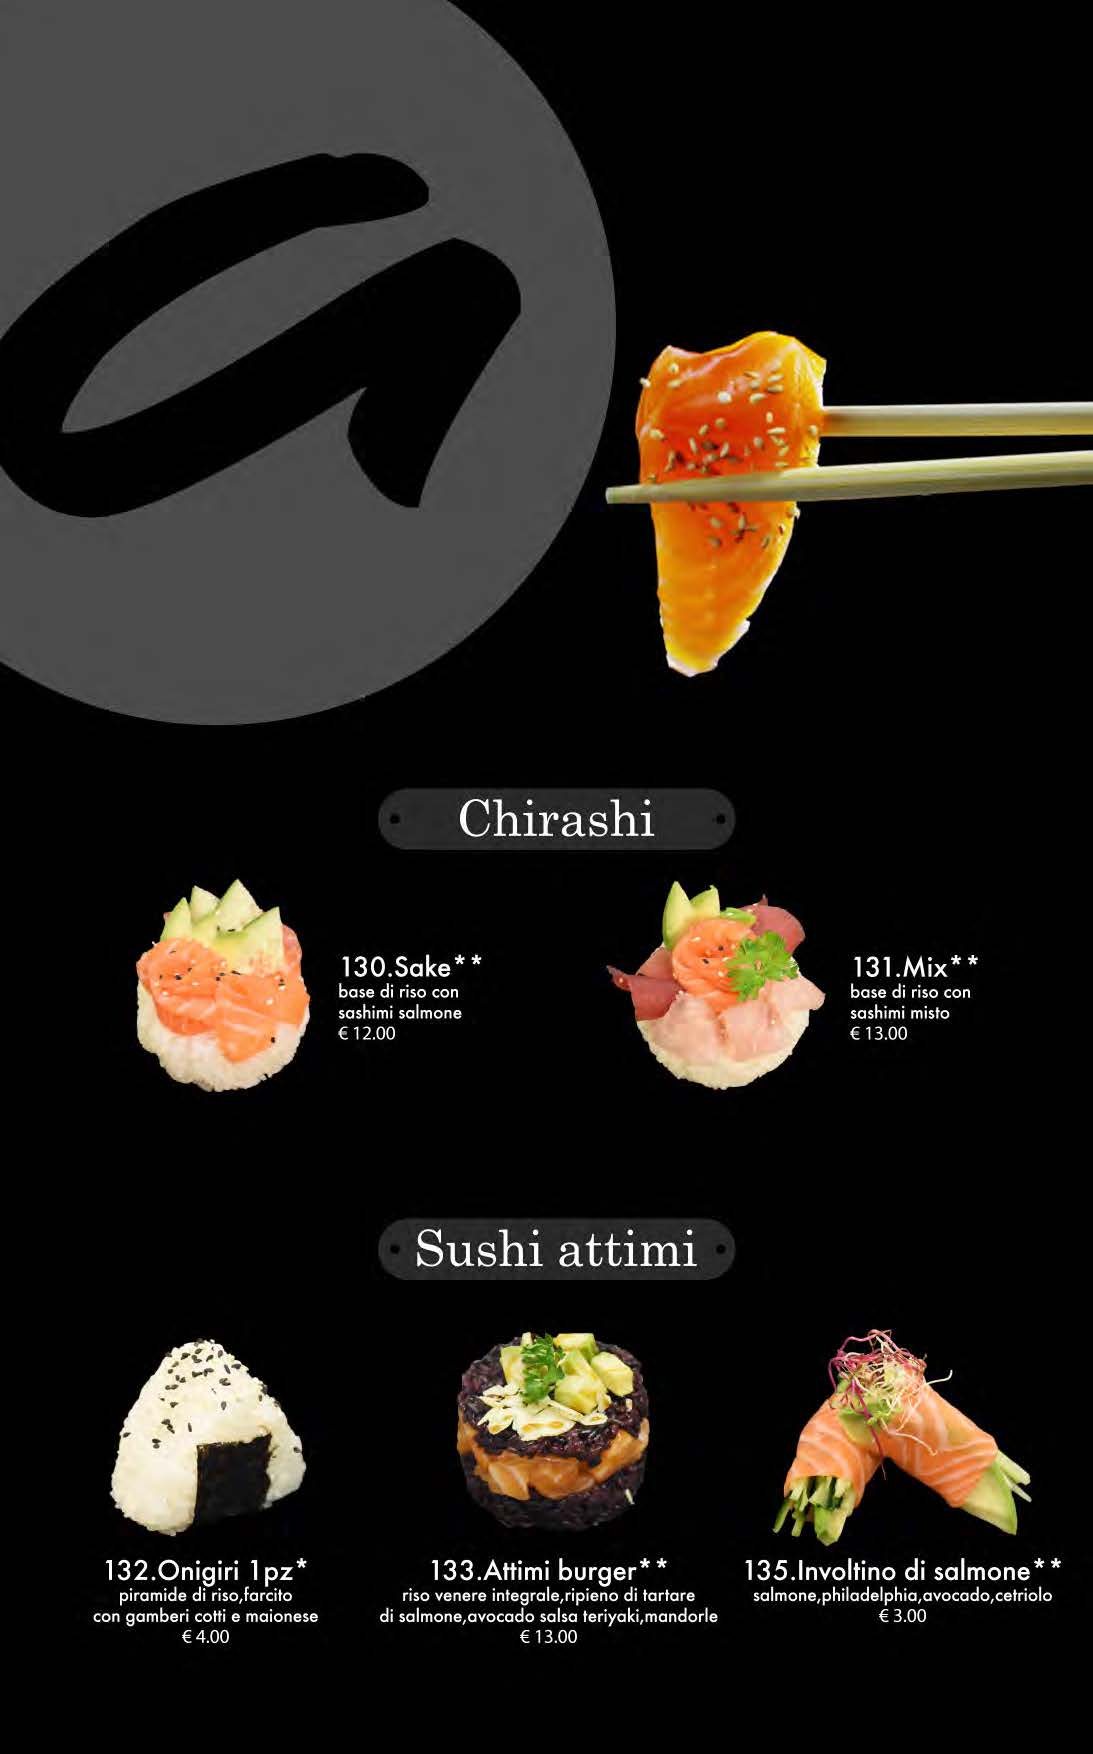 attimi ristorante giapponese padova menù cena pagina 13 chirashi sushi attimi